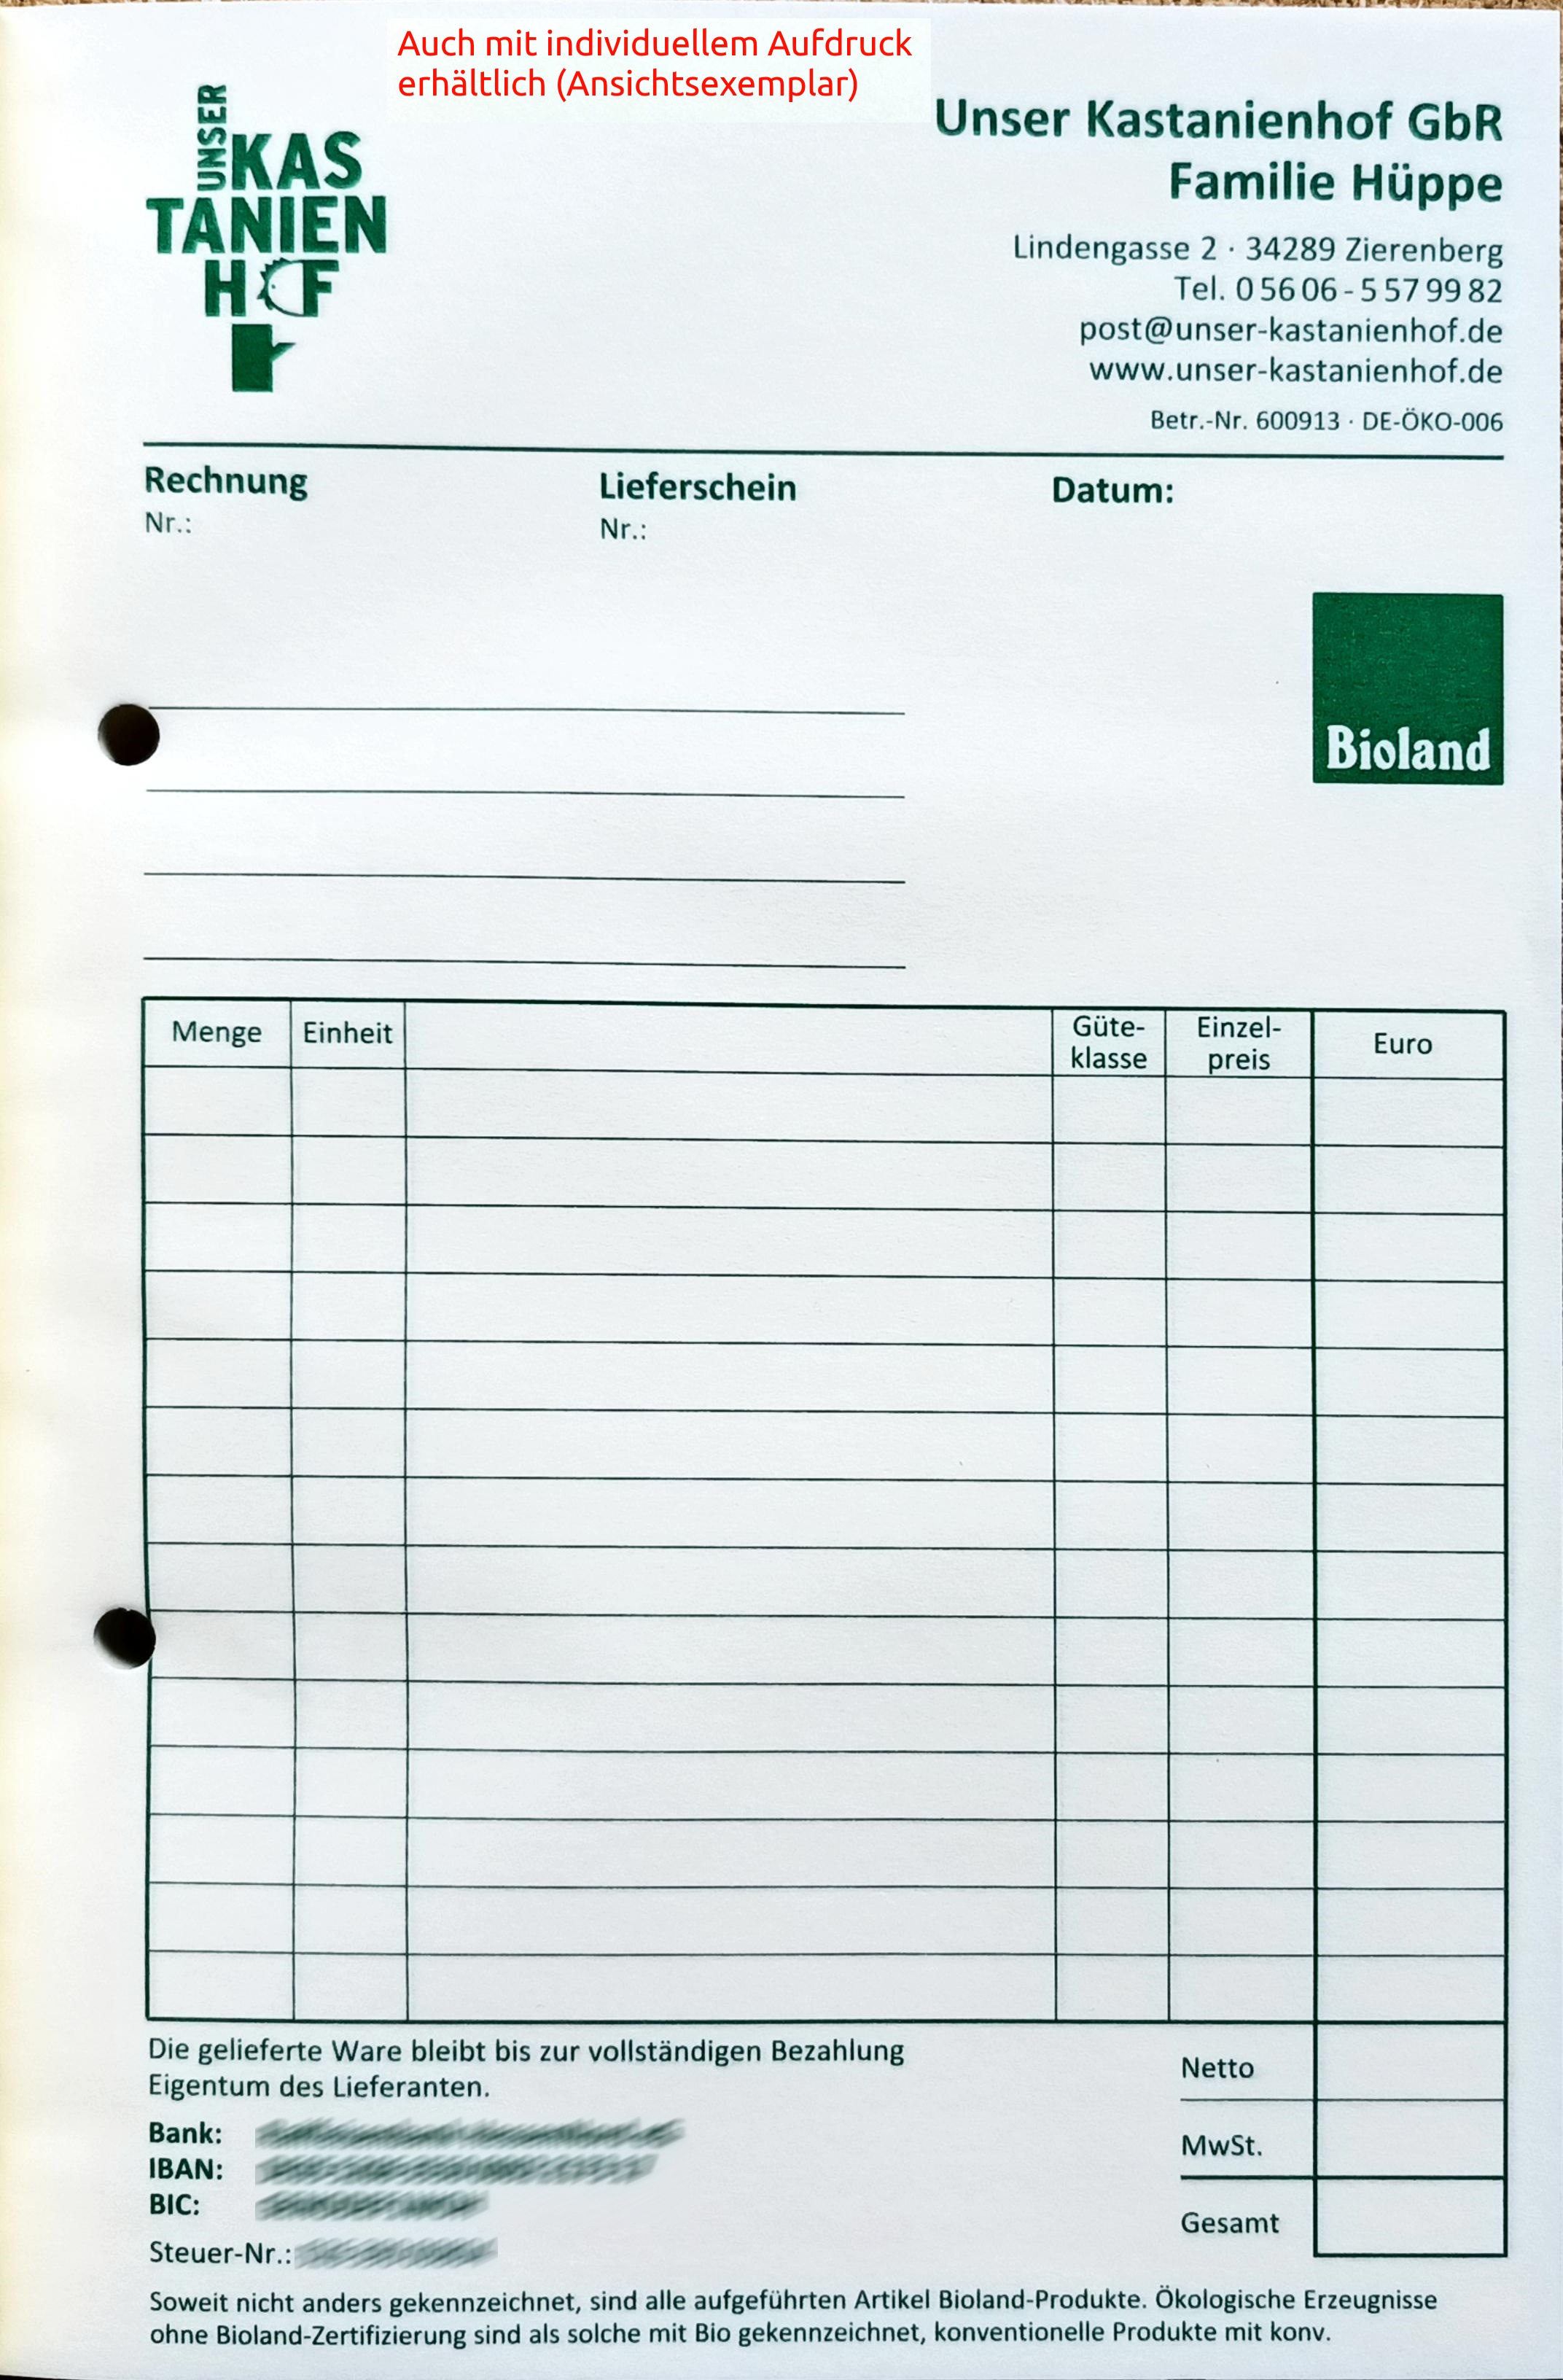 Rechnungs-/Lieferscheinbuch 3-fach